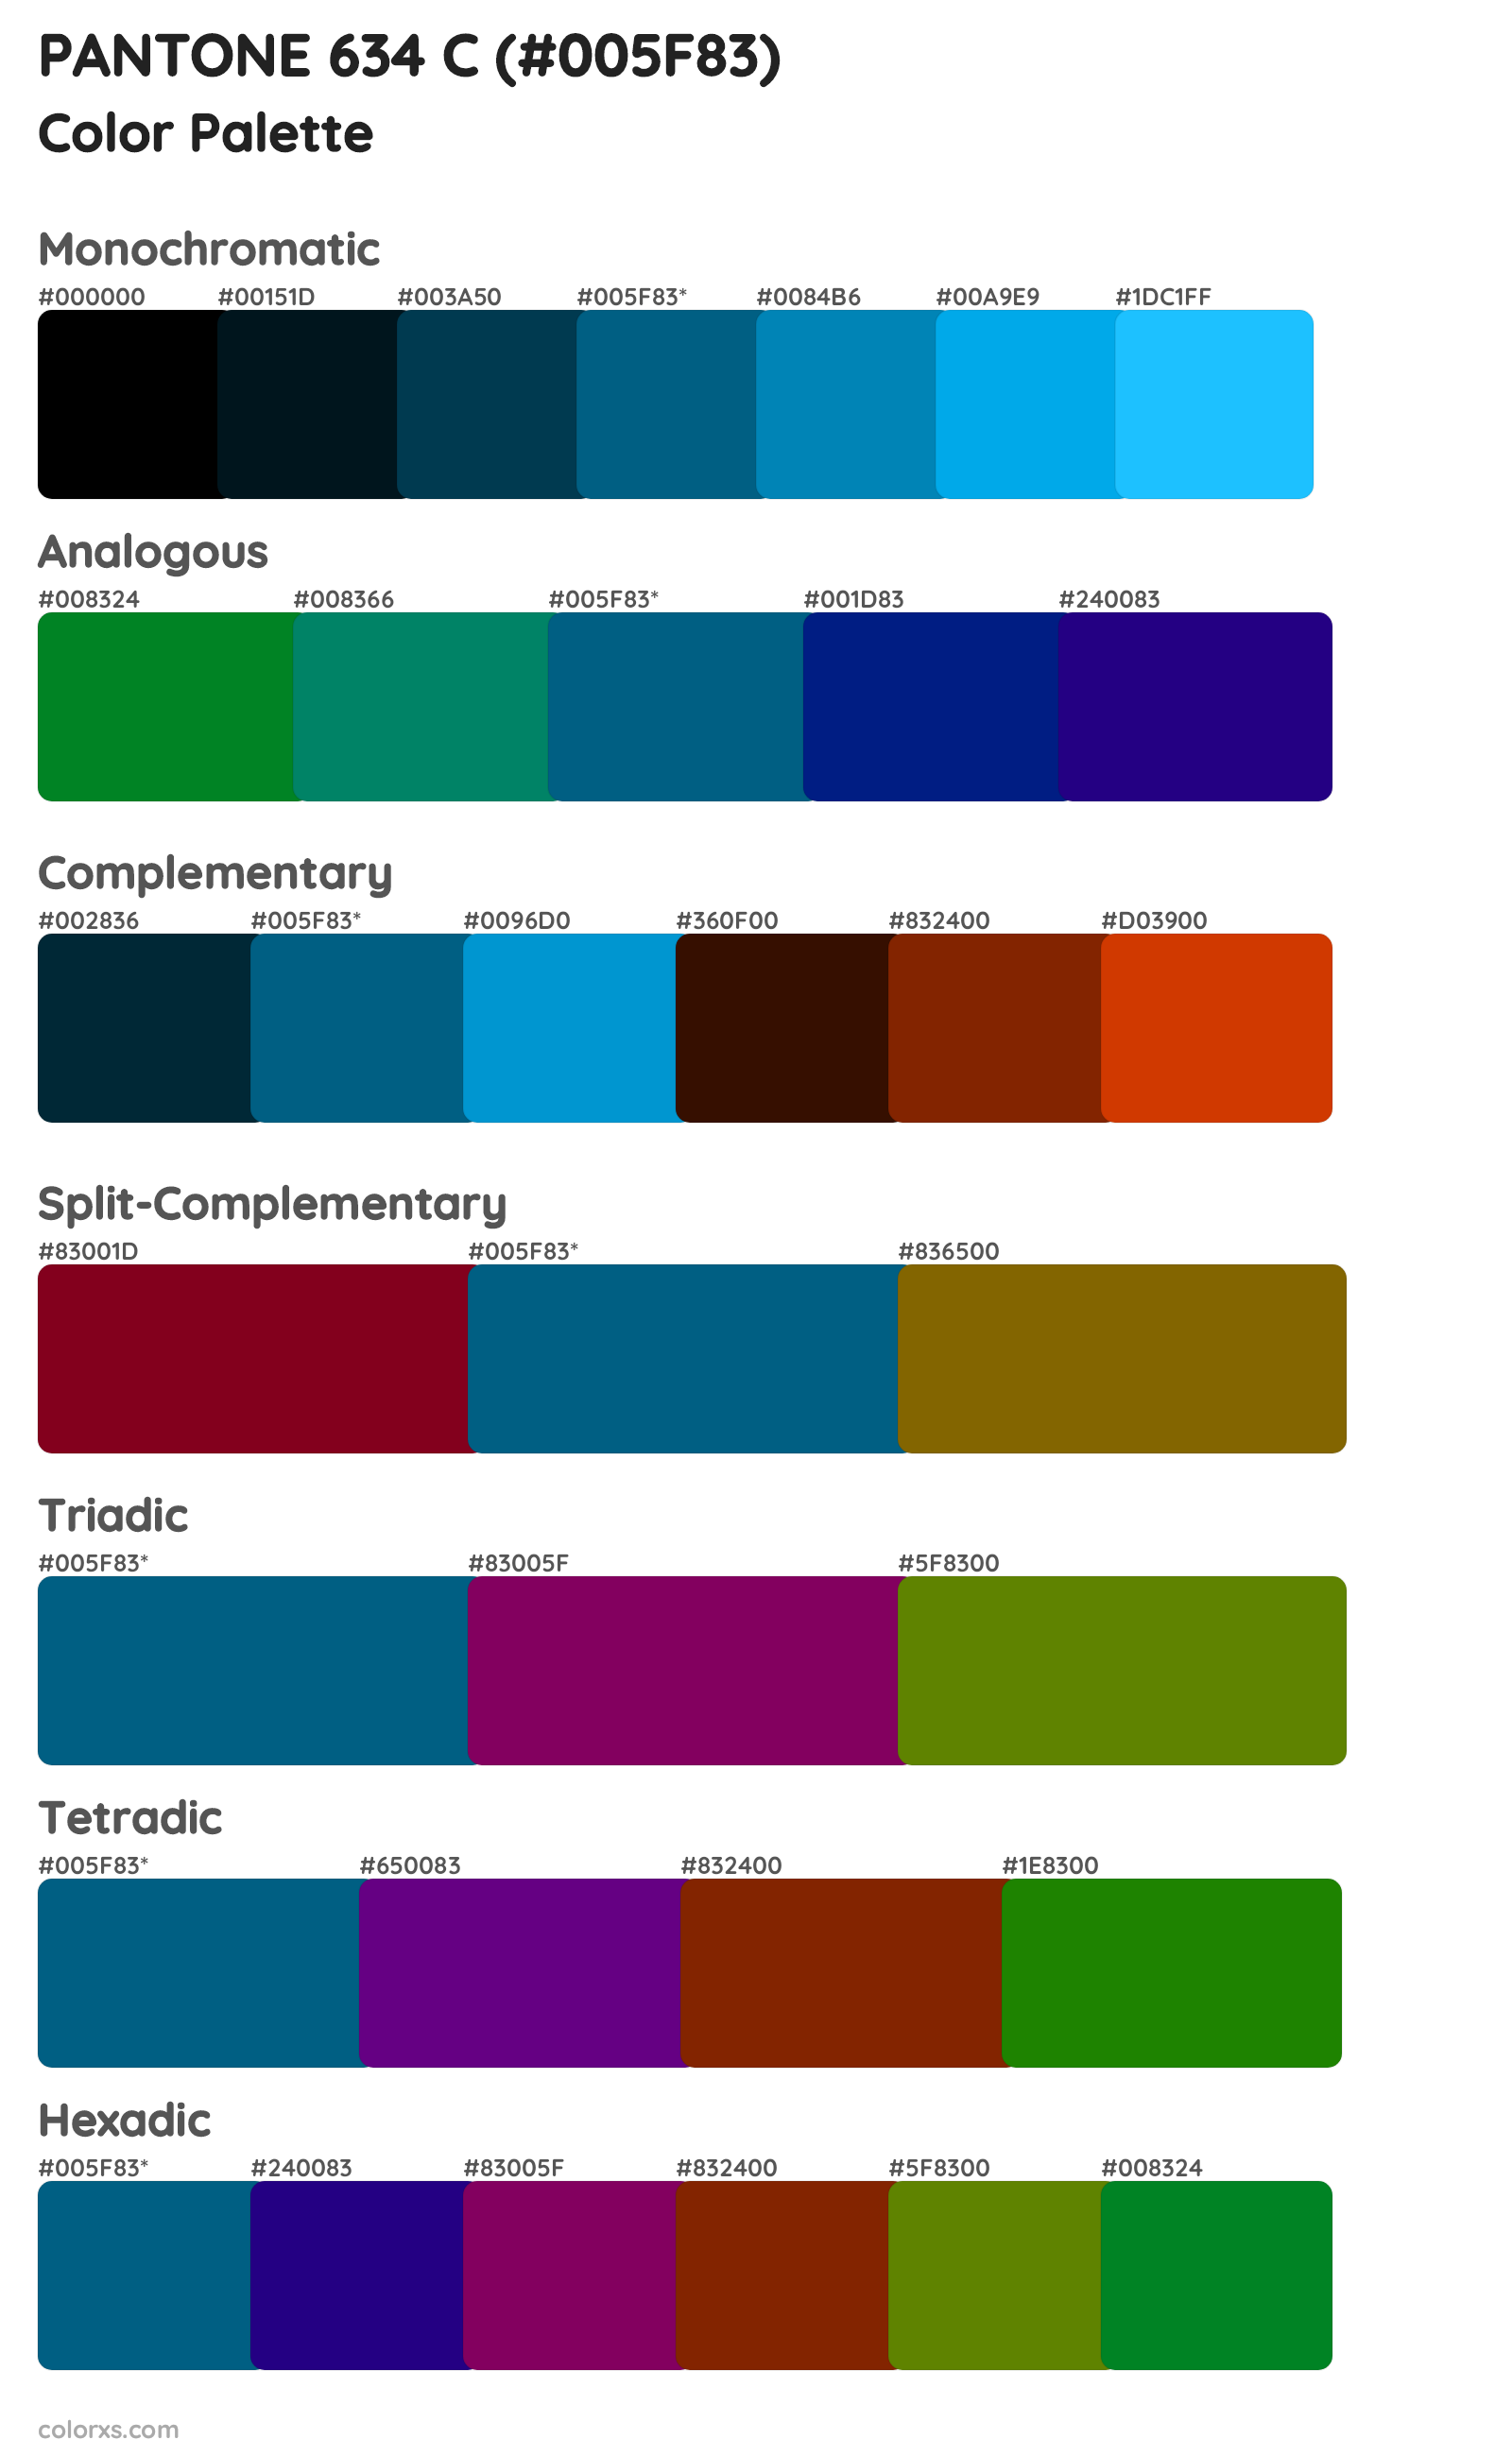 PANTONE 634 C Color Scheme Palettes